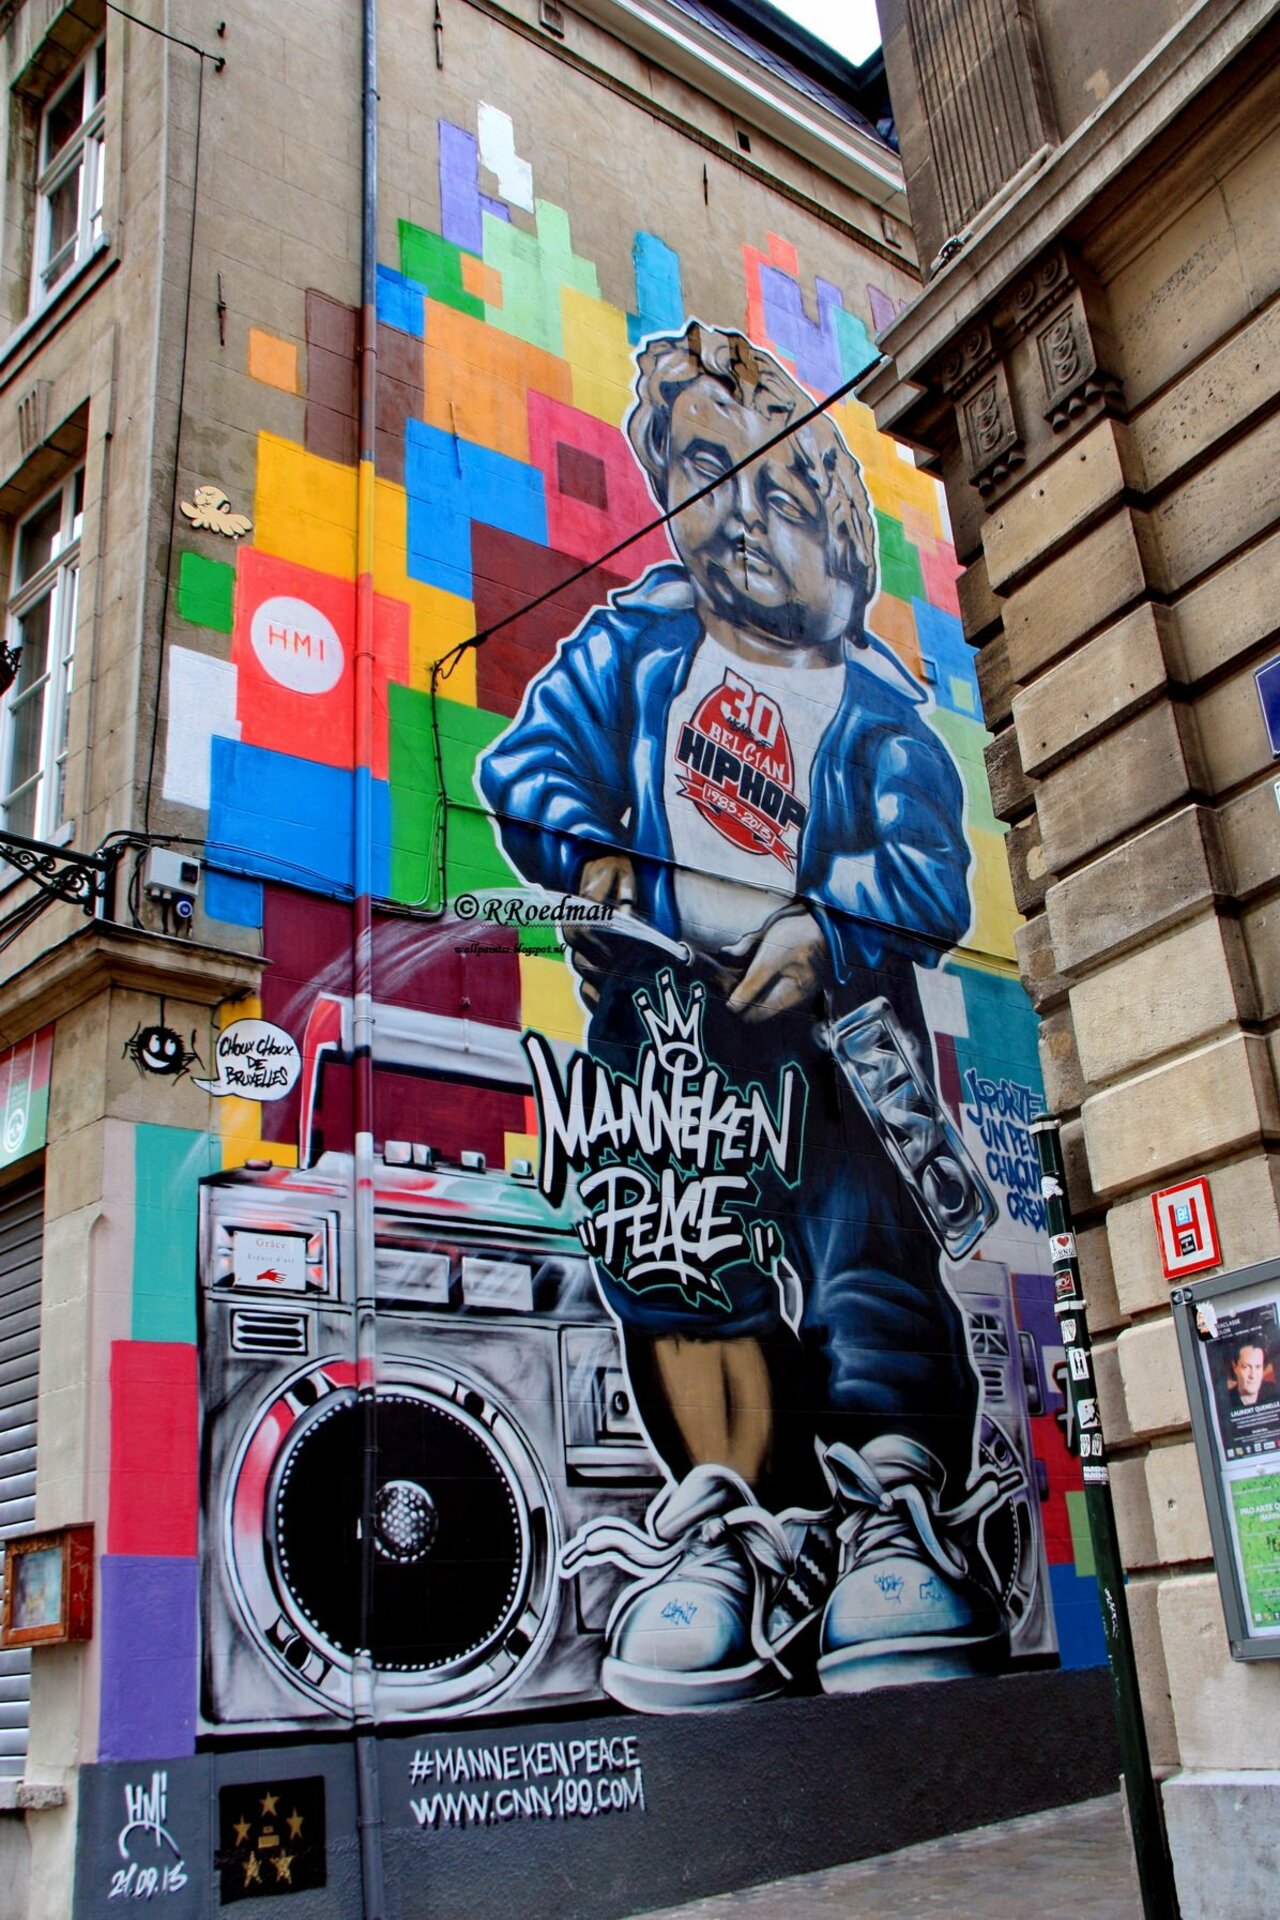 RT @RRoedman: #streetart #graffiti #mural manneke pis in #Brussel in #Belgium ,2 pics at http://wallpaintss.blogspot.nl https://t.co/4K1gvITr9o